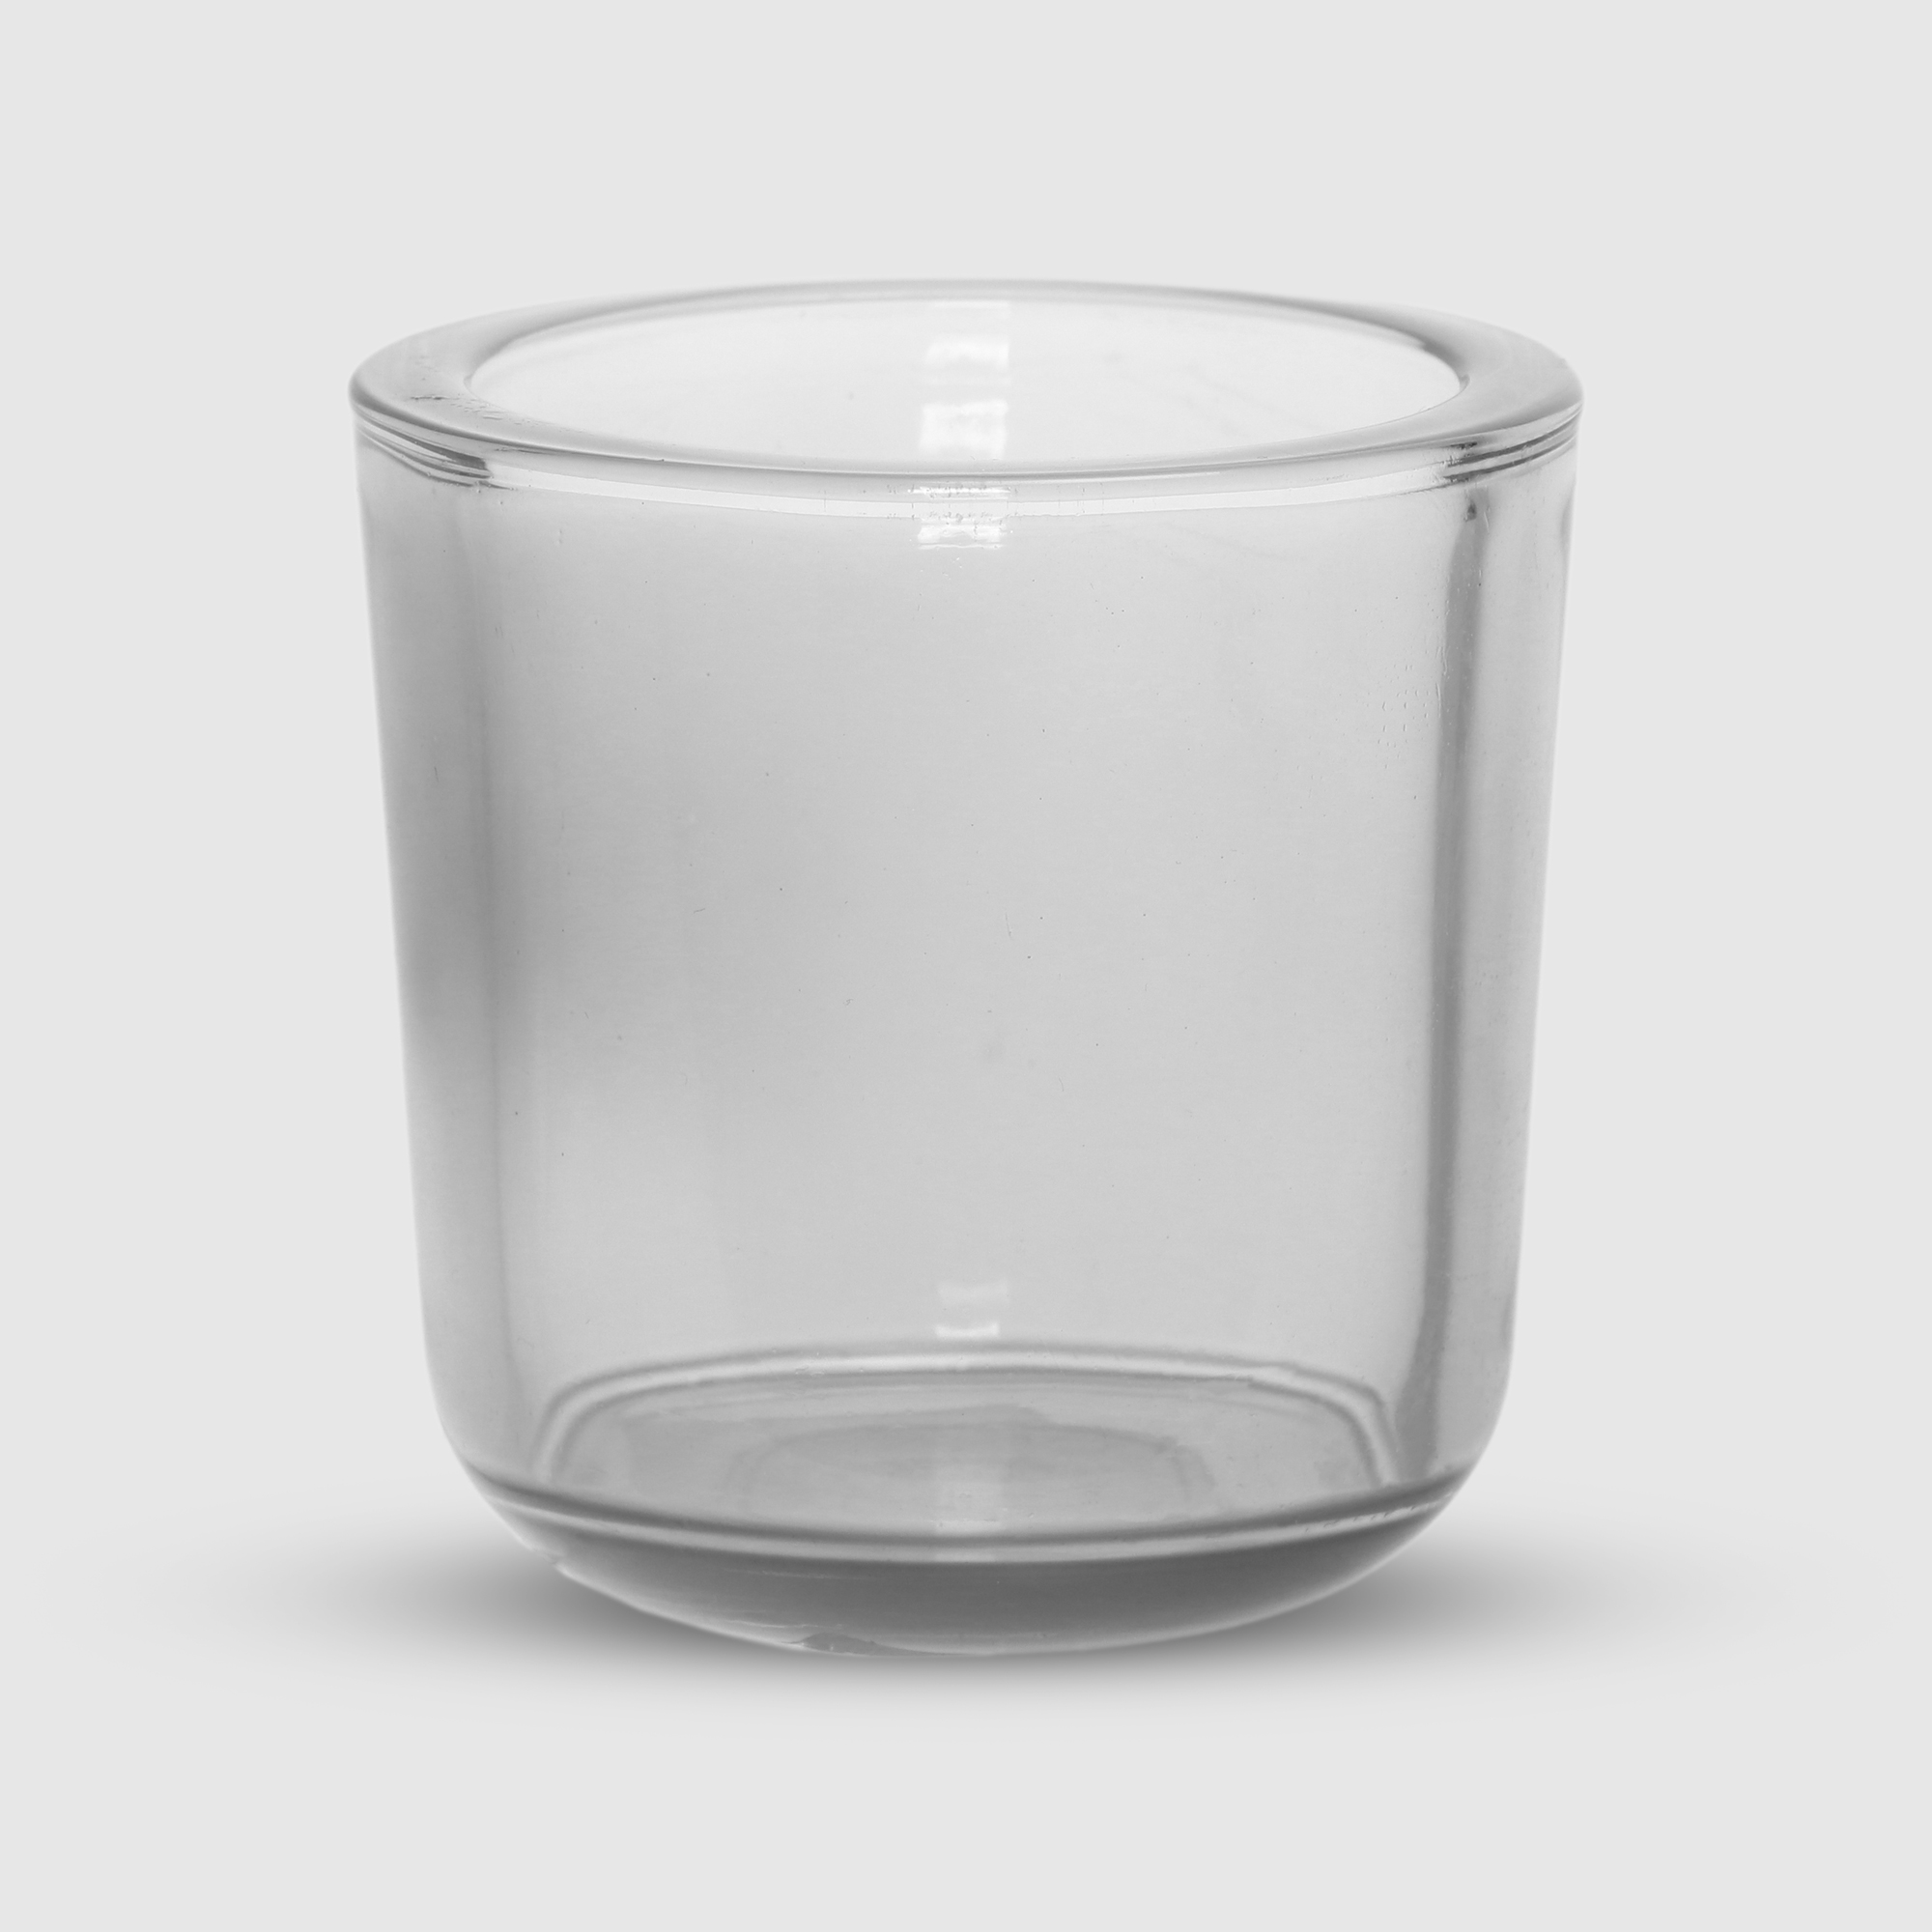 Ваза Hakbijl glass Cooper 7,5 см Серая ваза hakbijl glass cooper 7 5 см серая